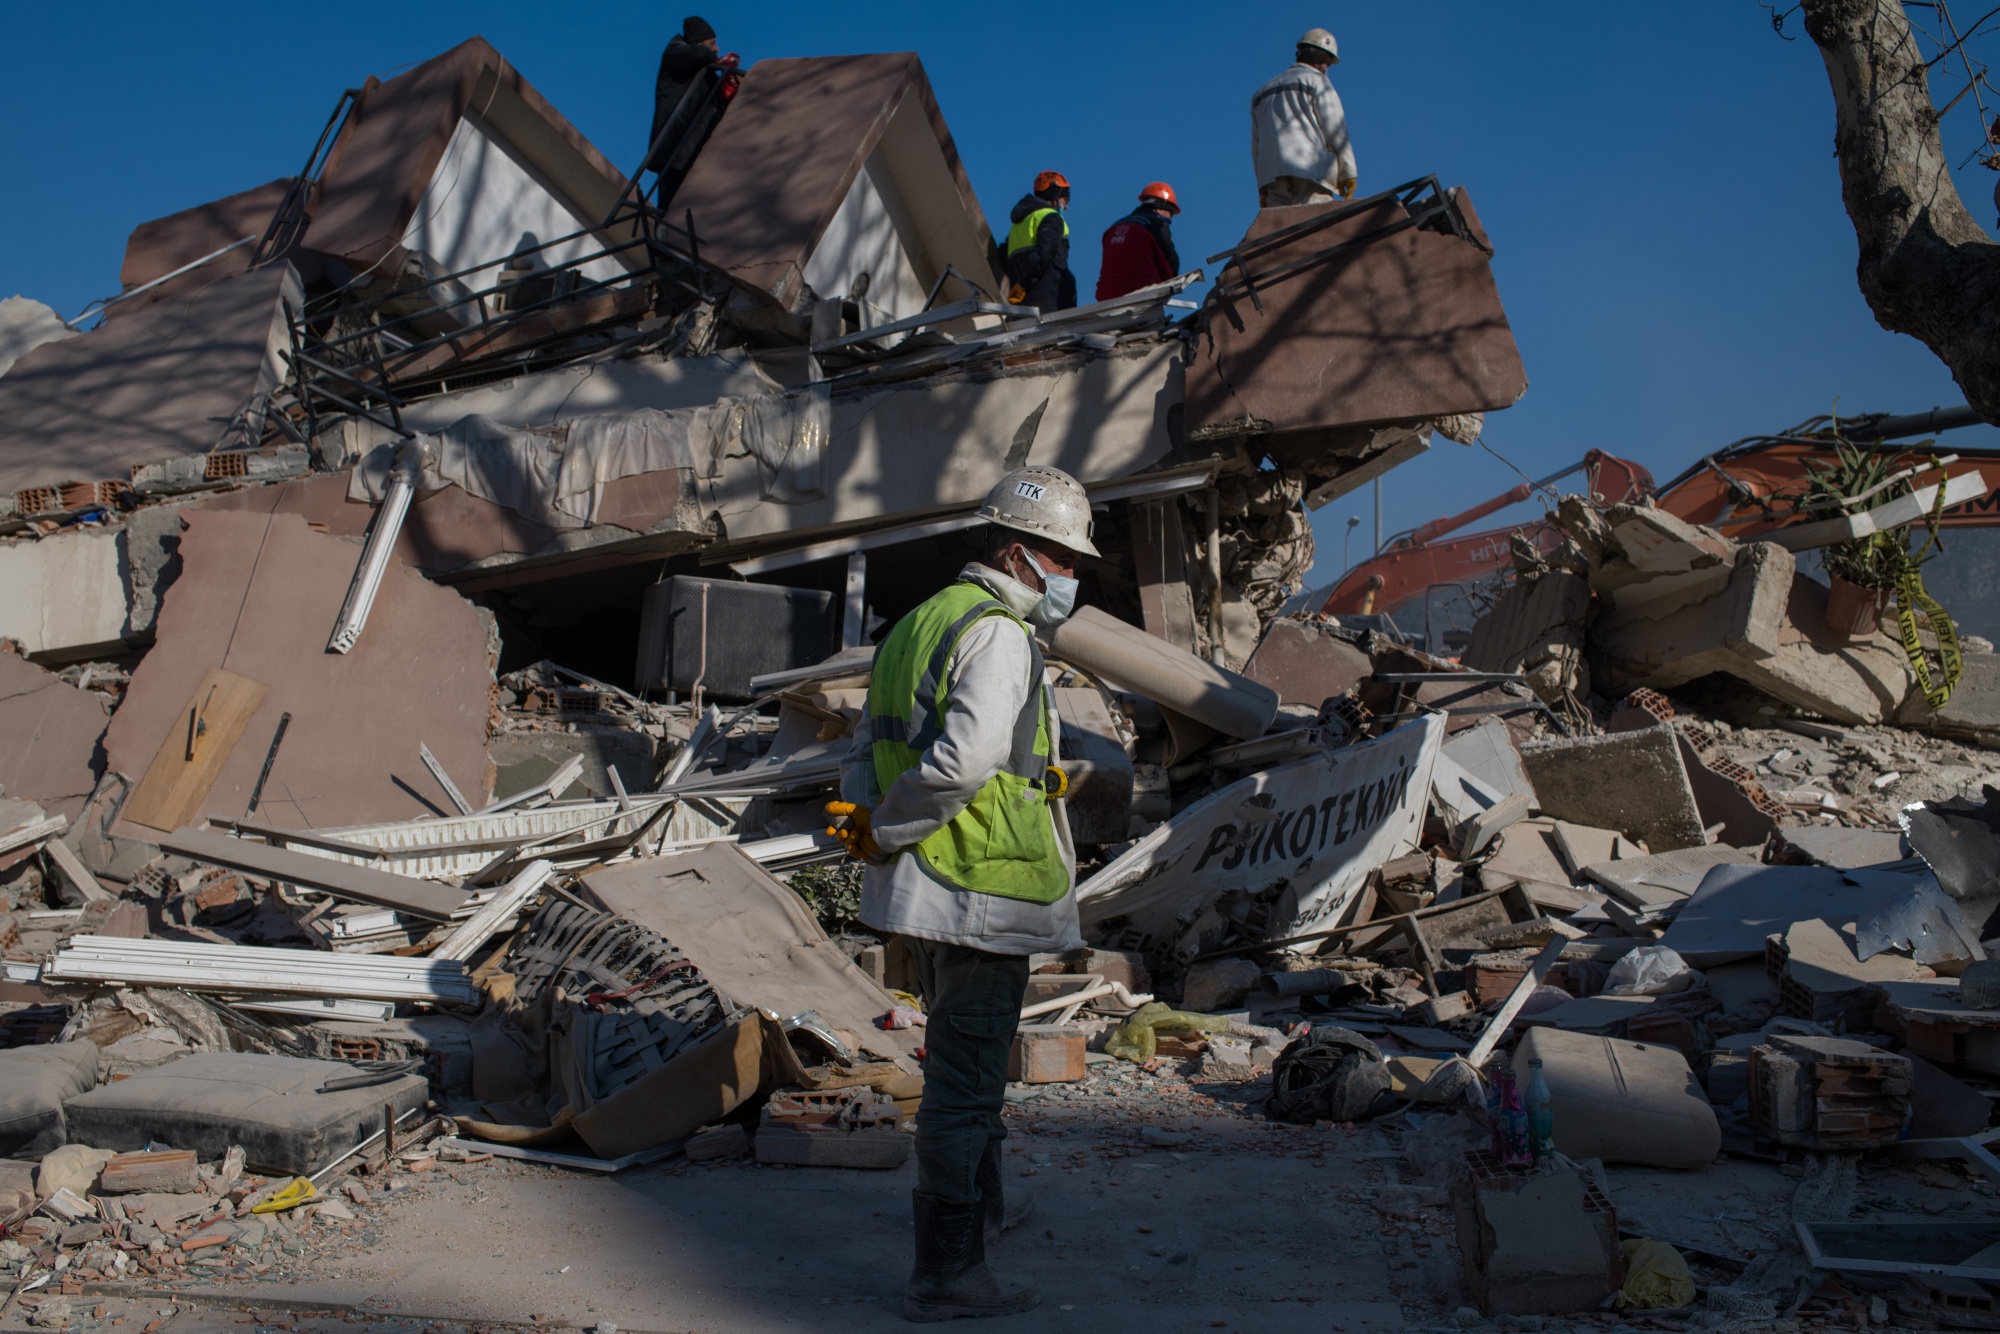 Turkey Marathon TV Show Raises $6 Billion Donation for Earthquake ...